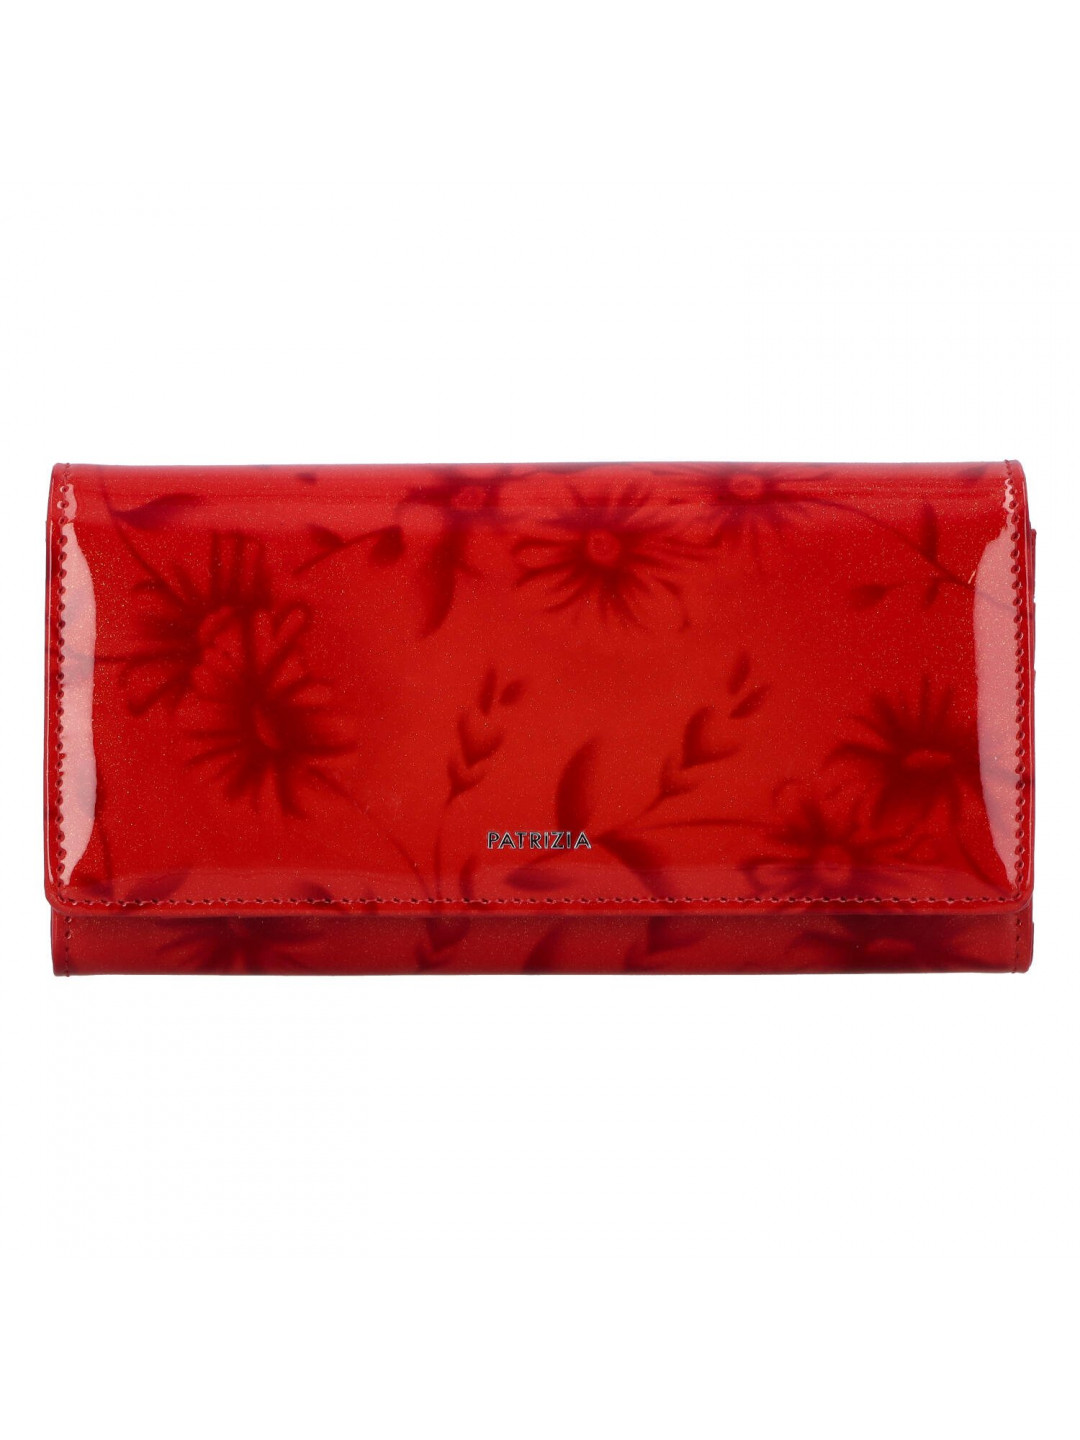 Luxusní větší dámská kožená peněženka Samantha červená laková s květy